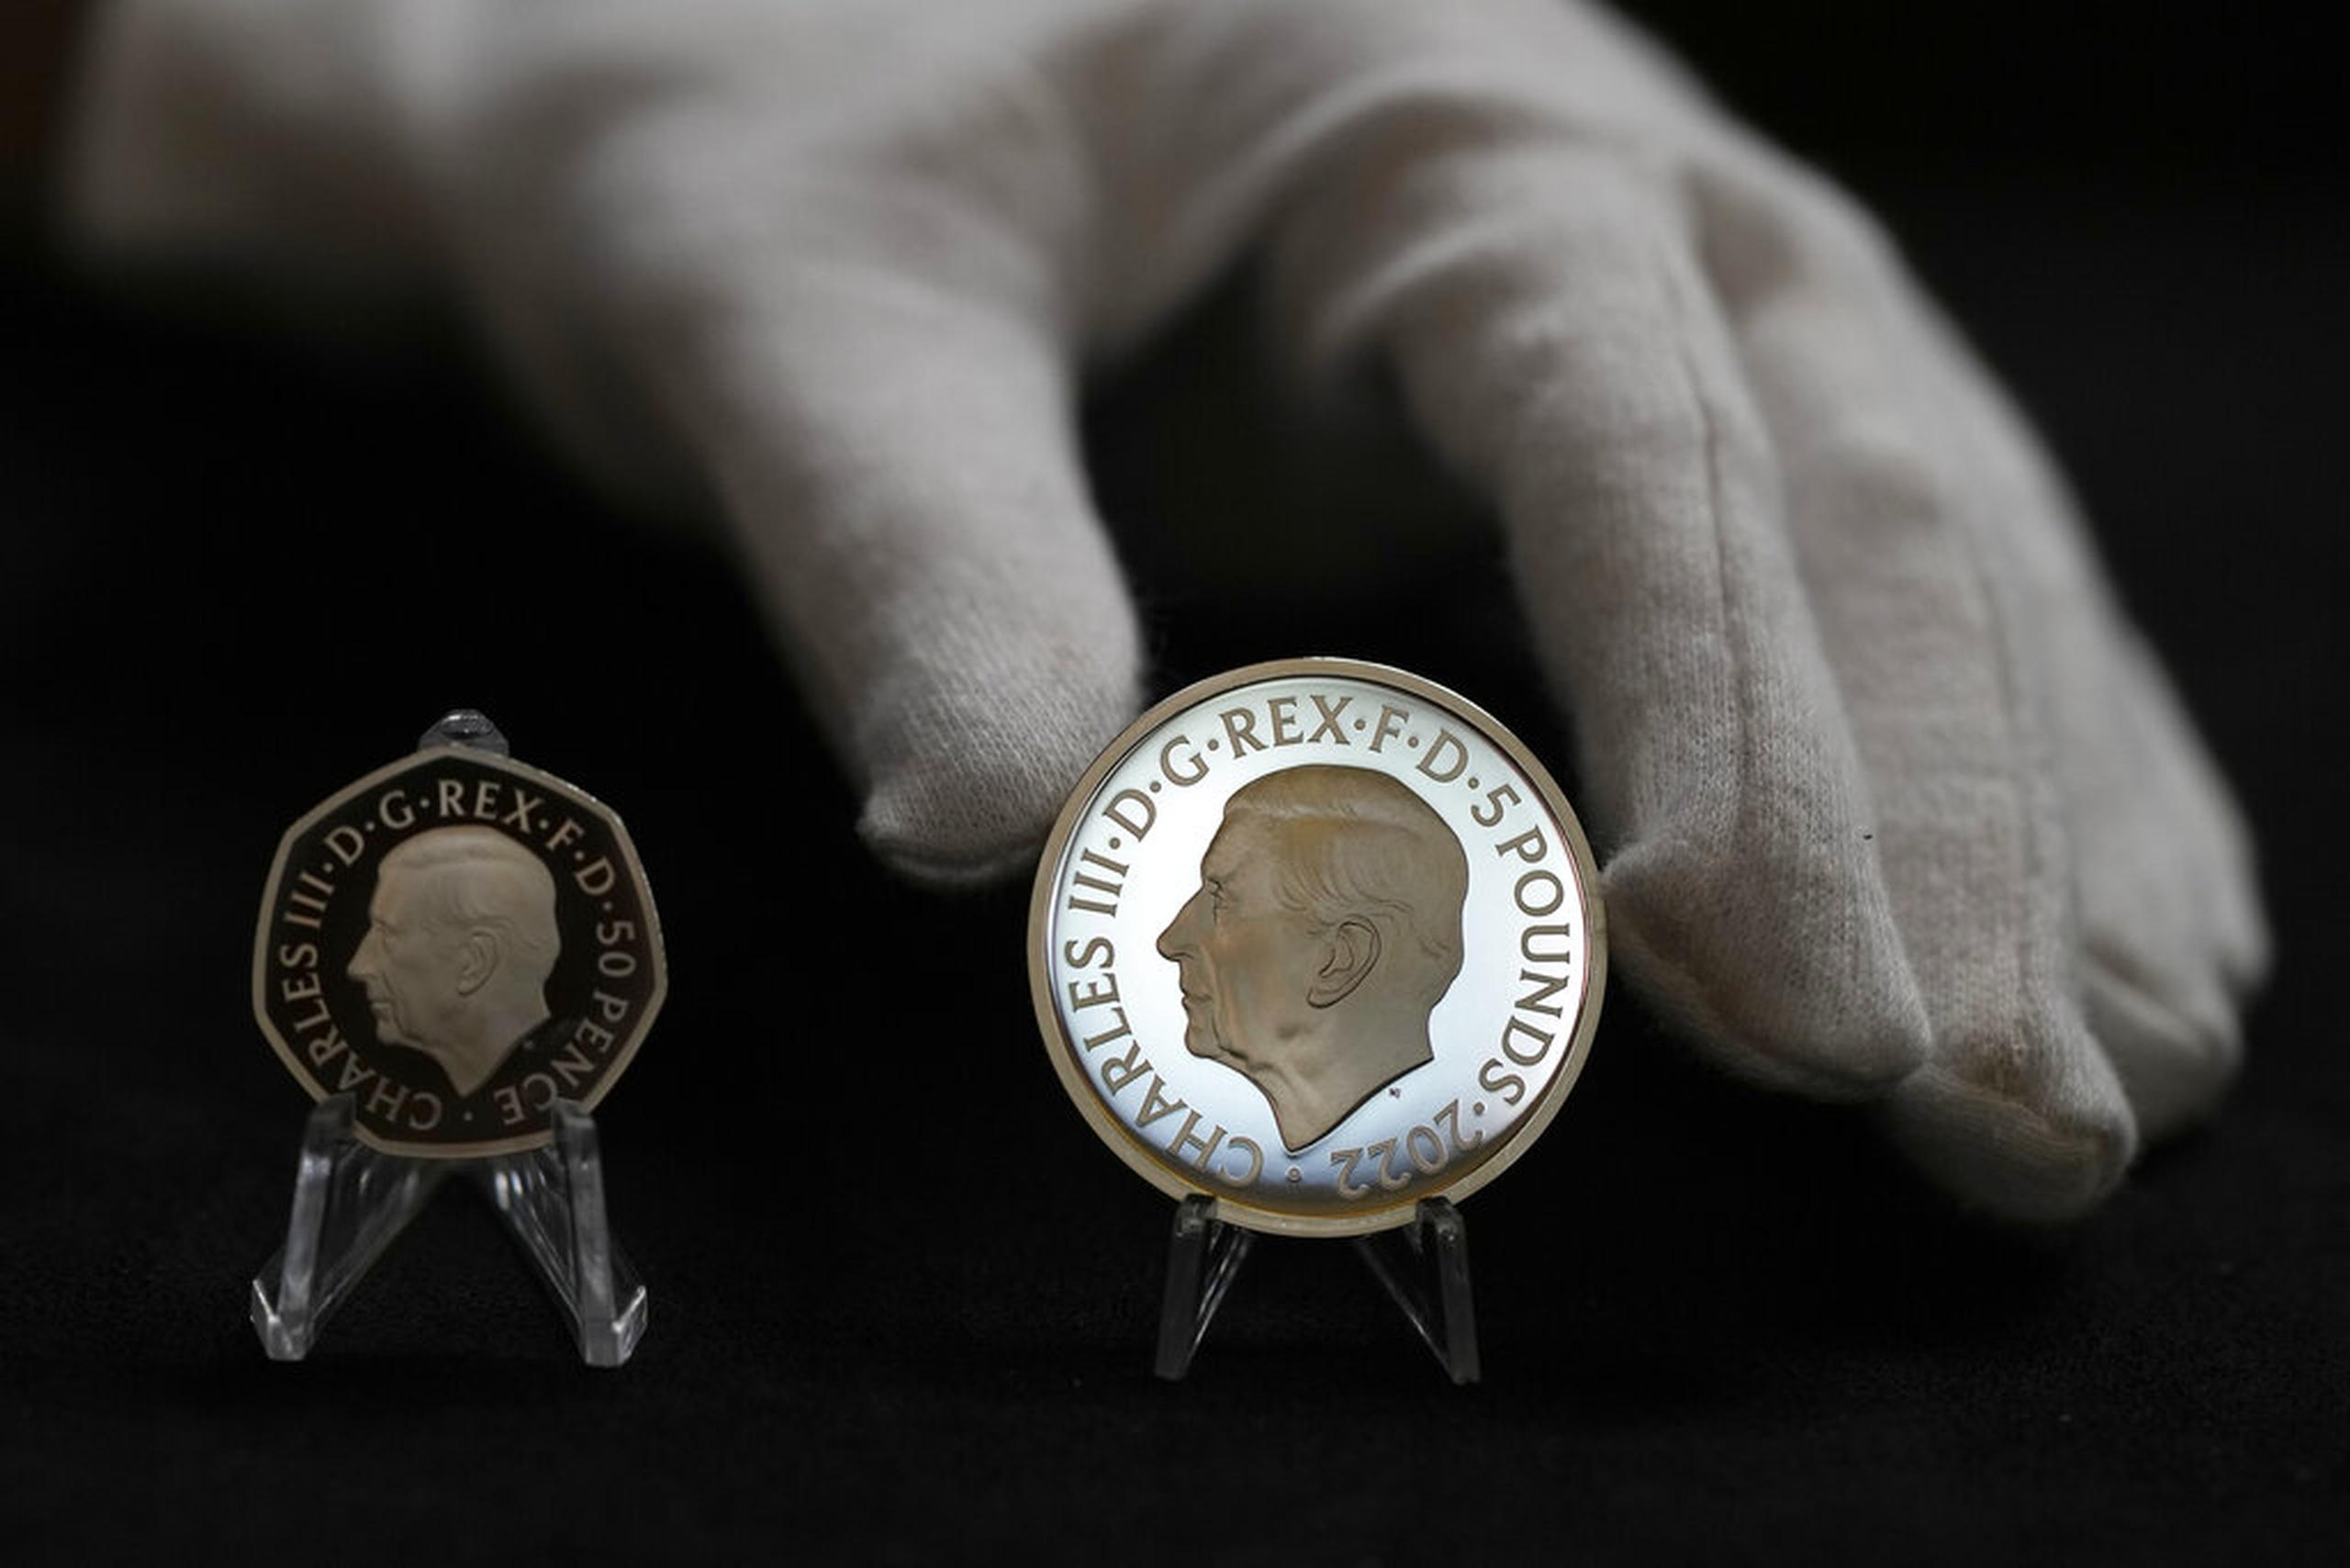 Dos monedas nuevas muestran el retrato oficial del rey Carlos III: una de 50 peniques a la izquierda y una de 5 libras a la derecha.